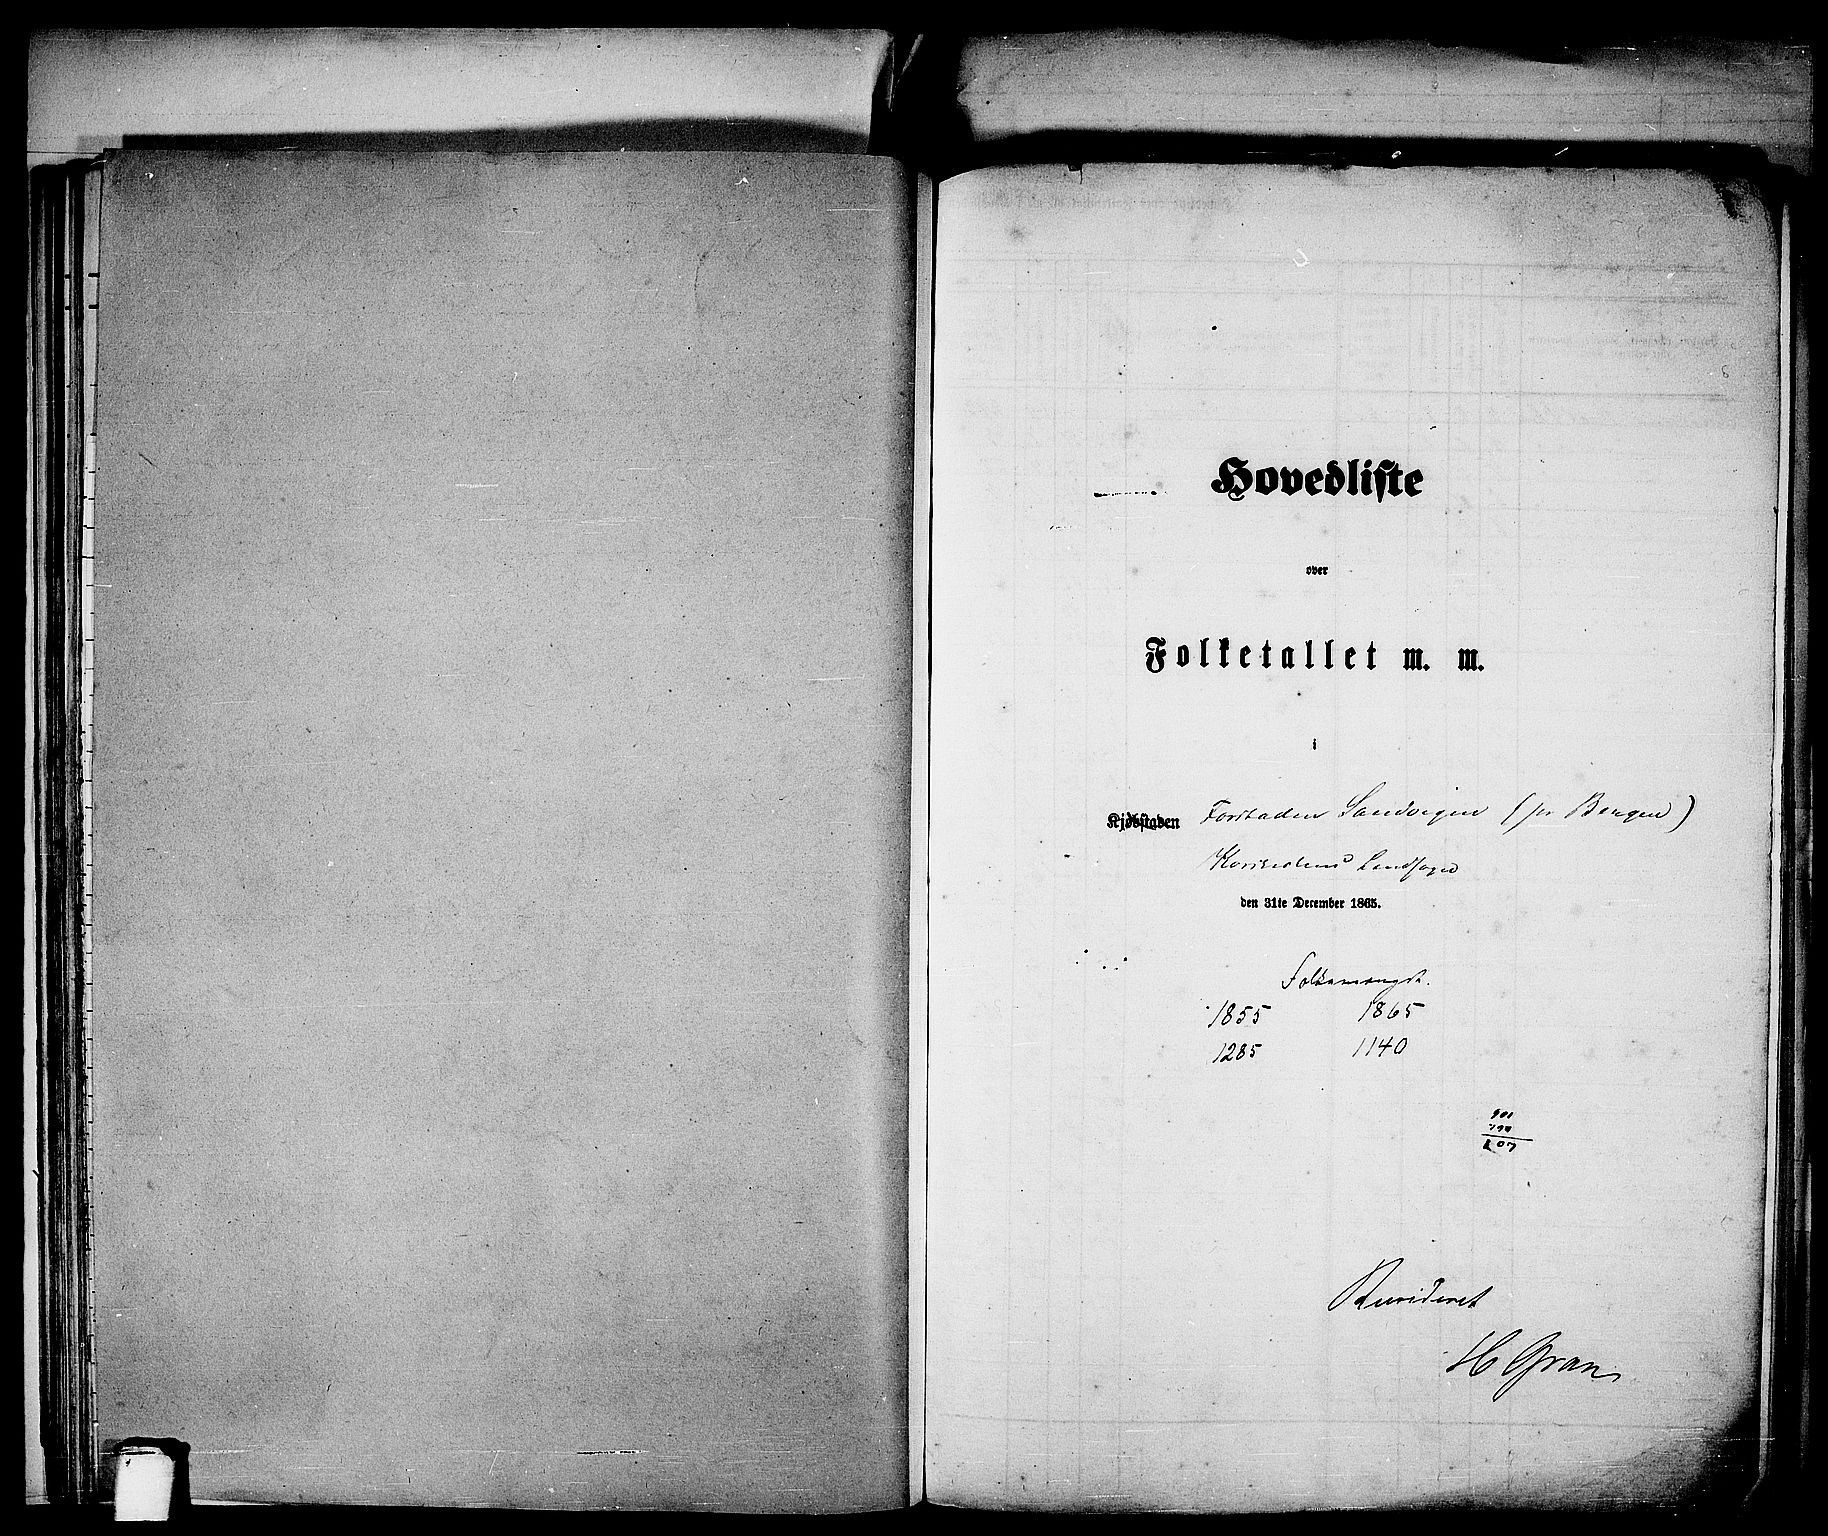 RA, Folketelling 1865 for 1281L Bergen Landdistrikt, Domkirkens landsokn og Korskirkens landsokn, 1865, s. 46